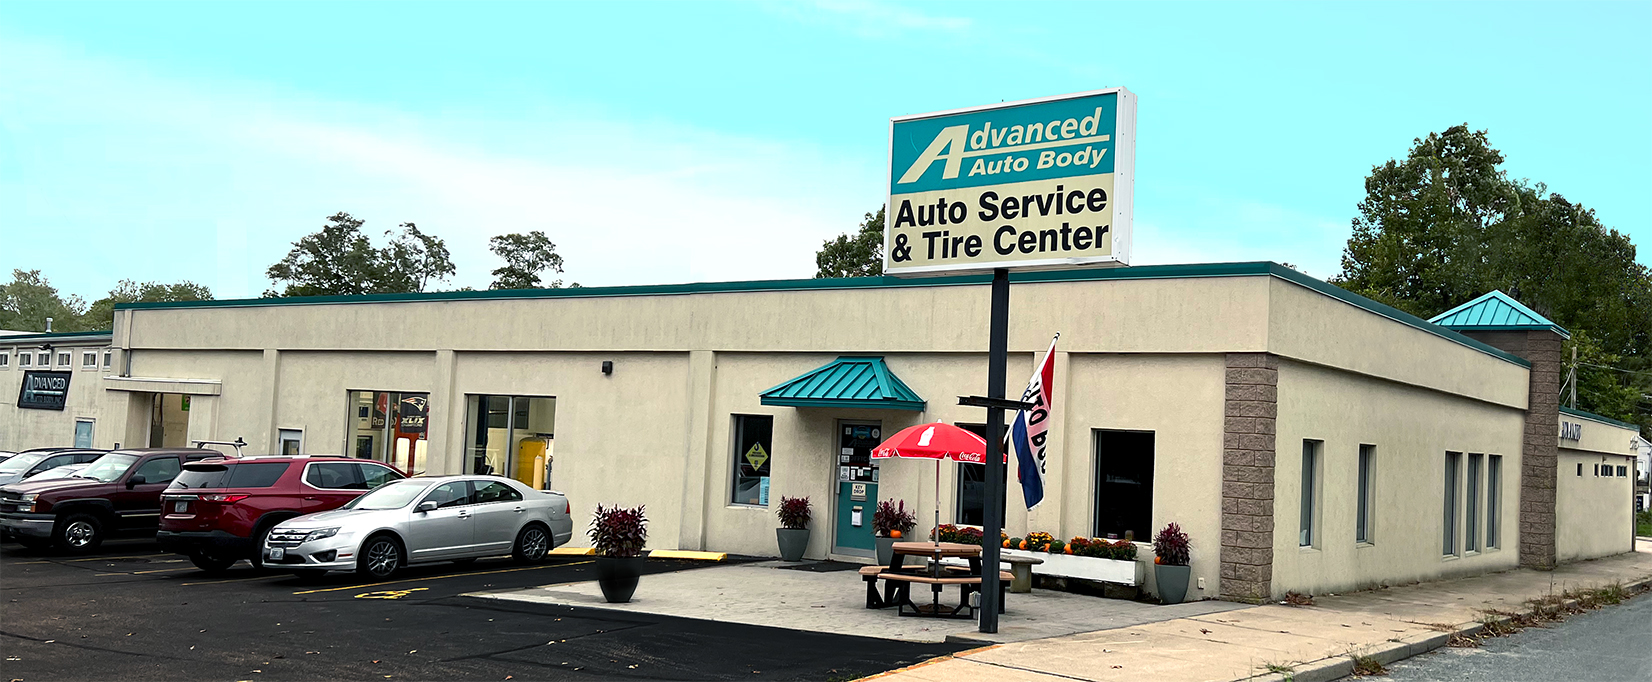 Advanced Autobody Rhode Island Auto Service & Tire Center